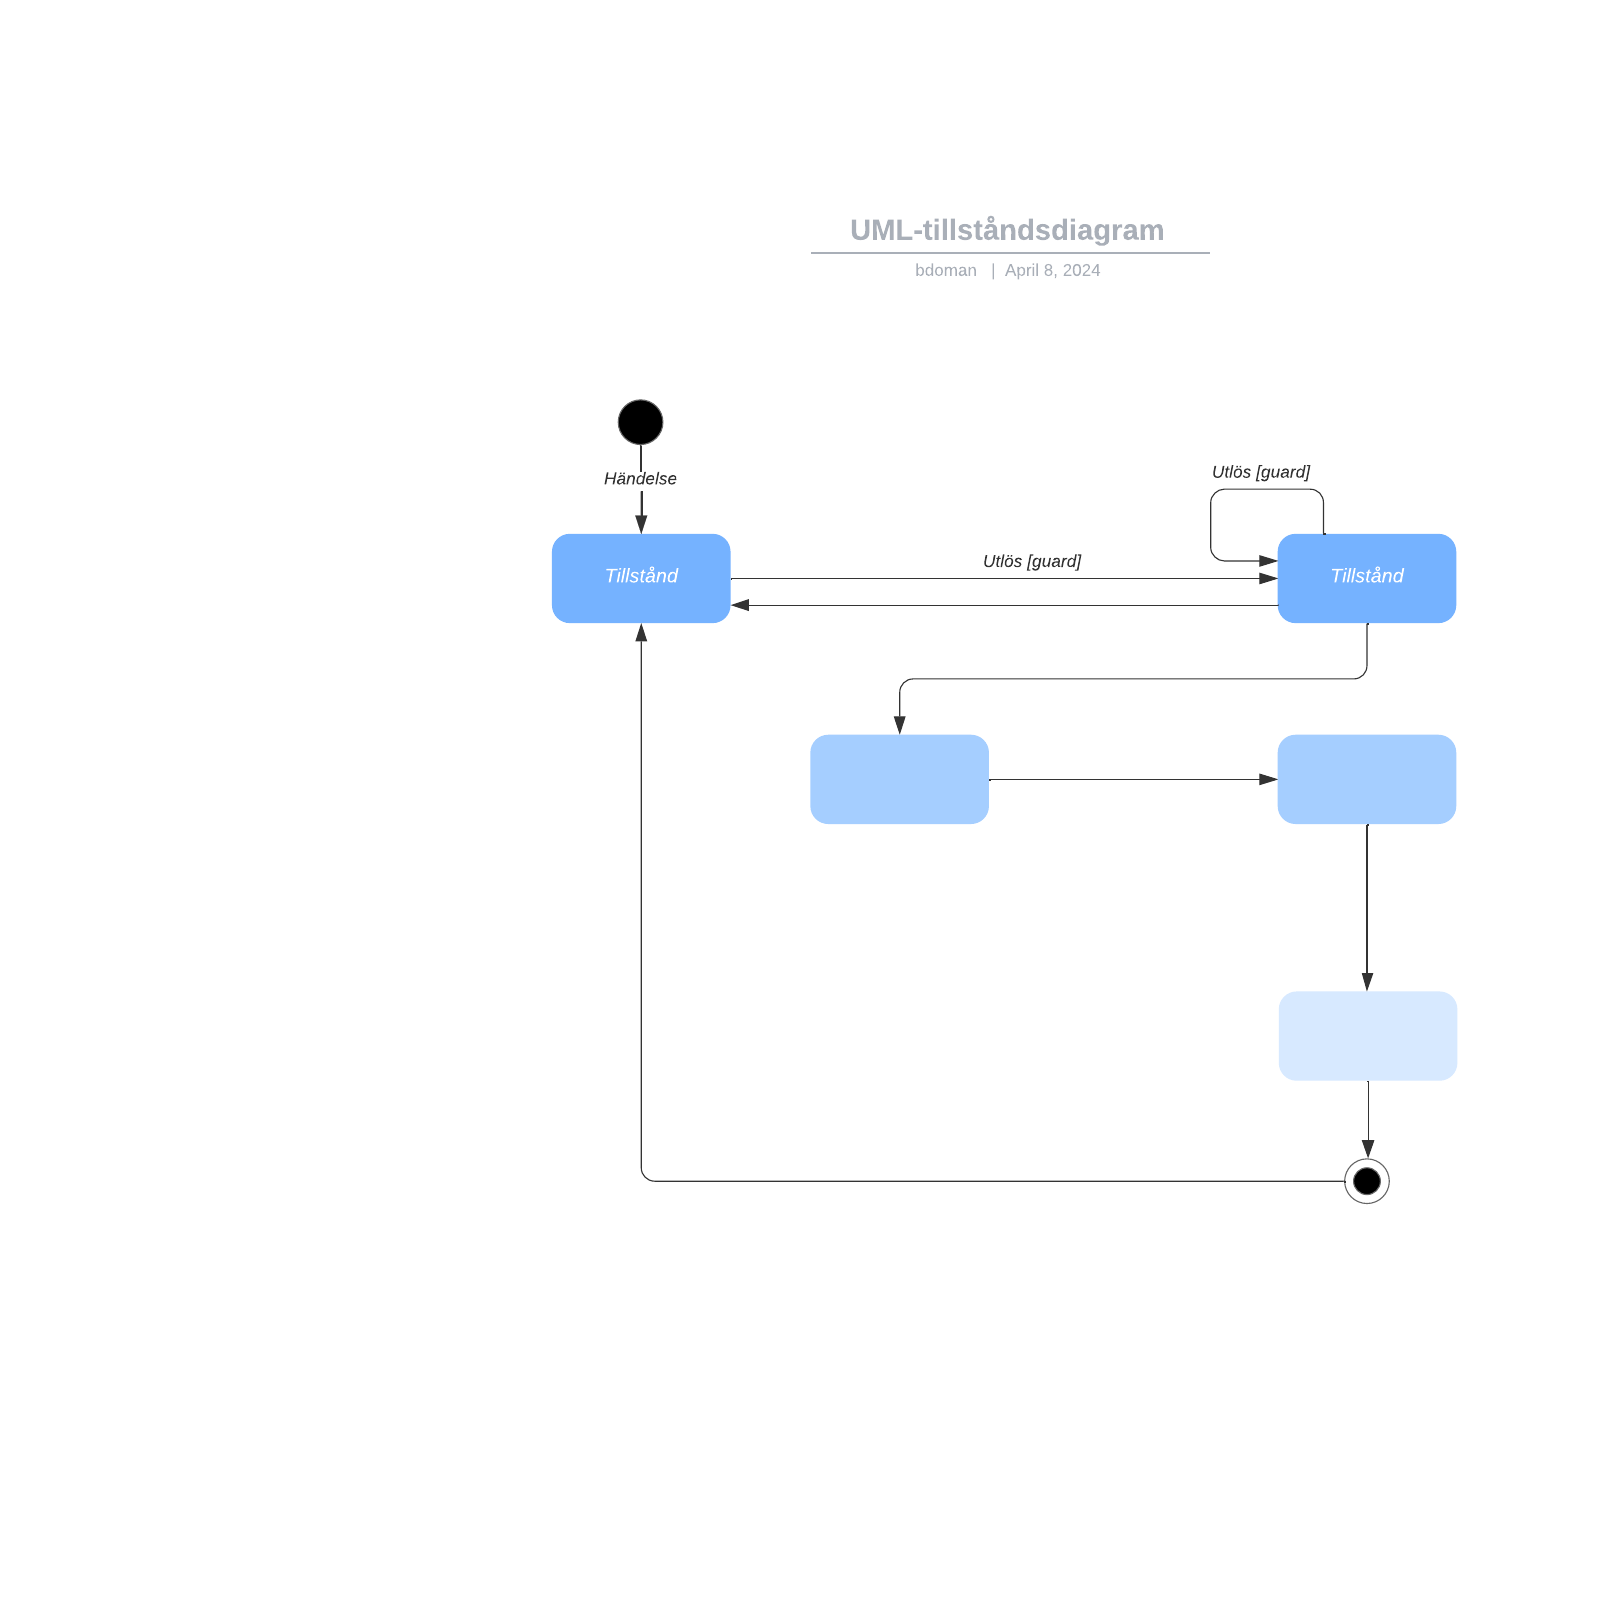 UML-tillståndsdiagram example